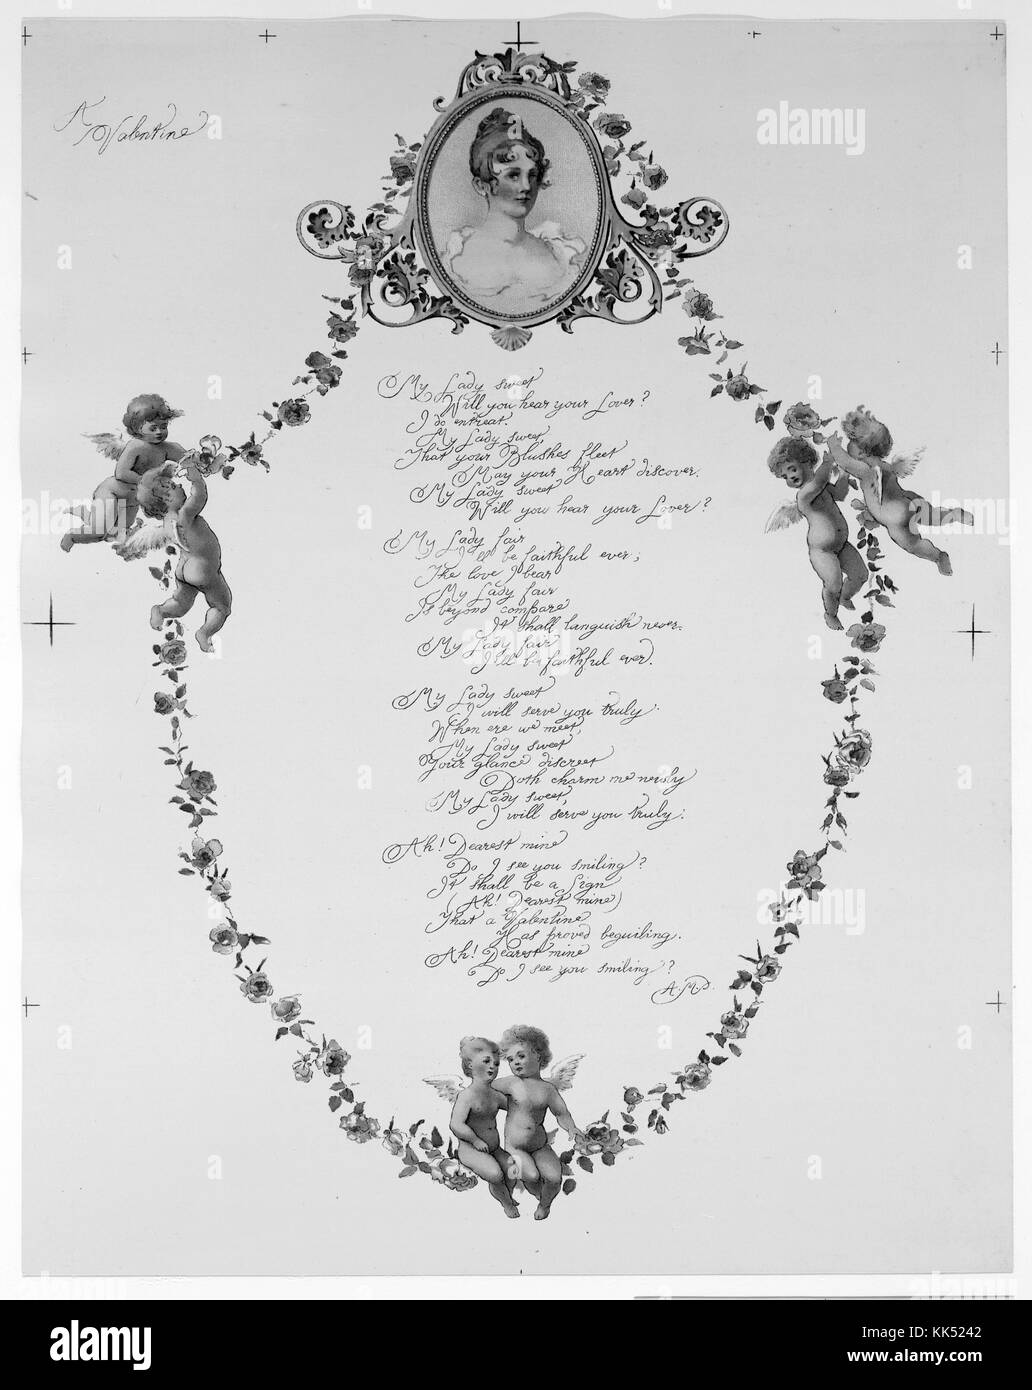 Une Saint-Valentin, représentant des guirlandes de fleurs, des anges, le portrait d'une femme en laiton, un poème d'amour, un sceau représentant deux oiseaux embrassant, publié par L Prang and Company, 1900. De la bibliothèque publique de New York. Banque D'Images